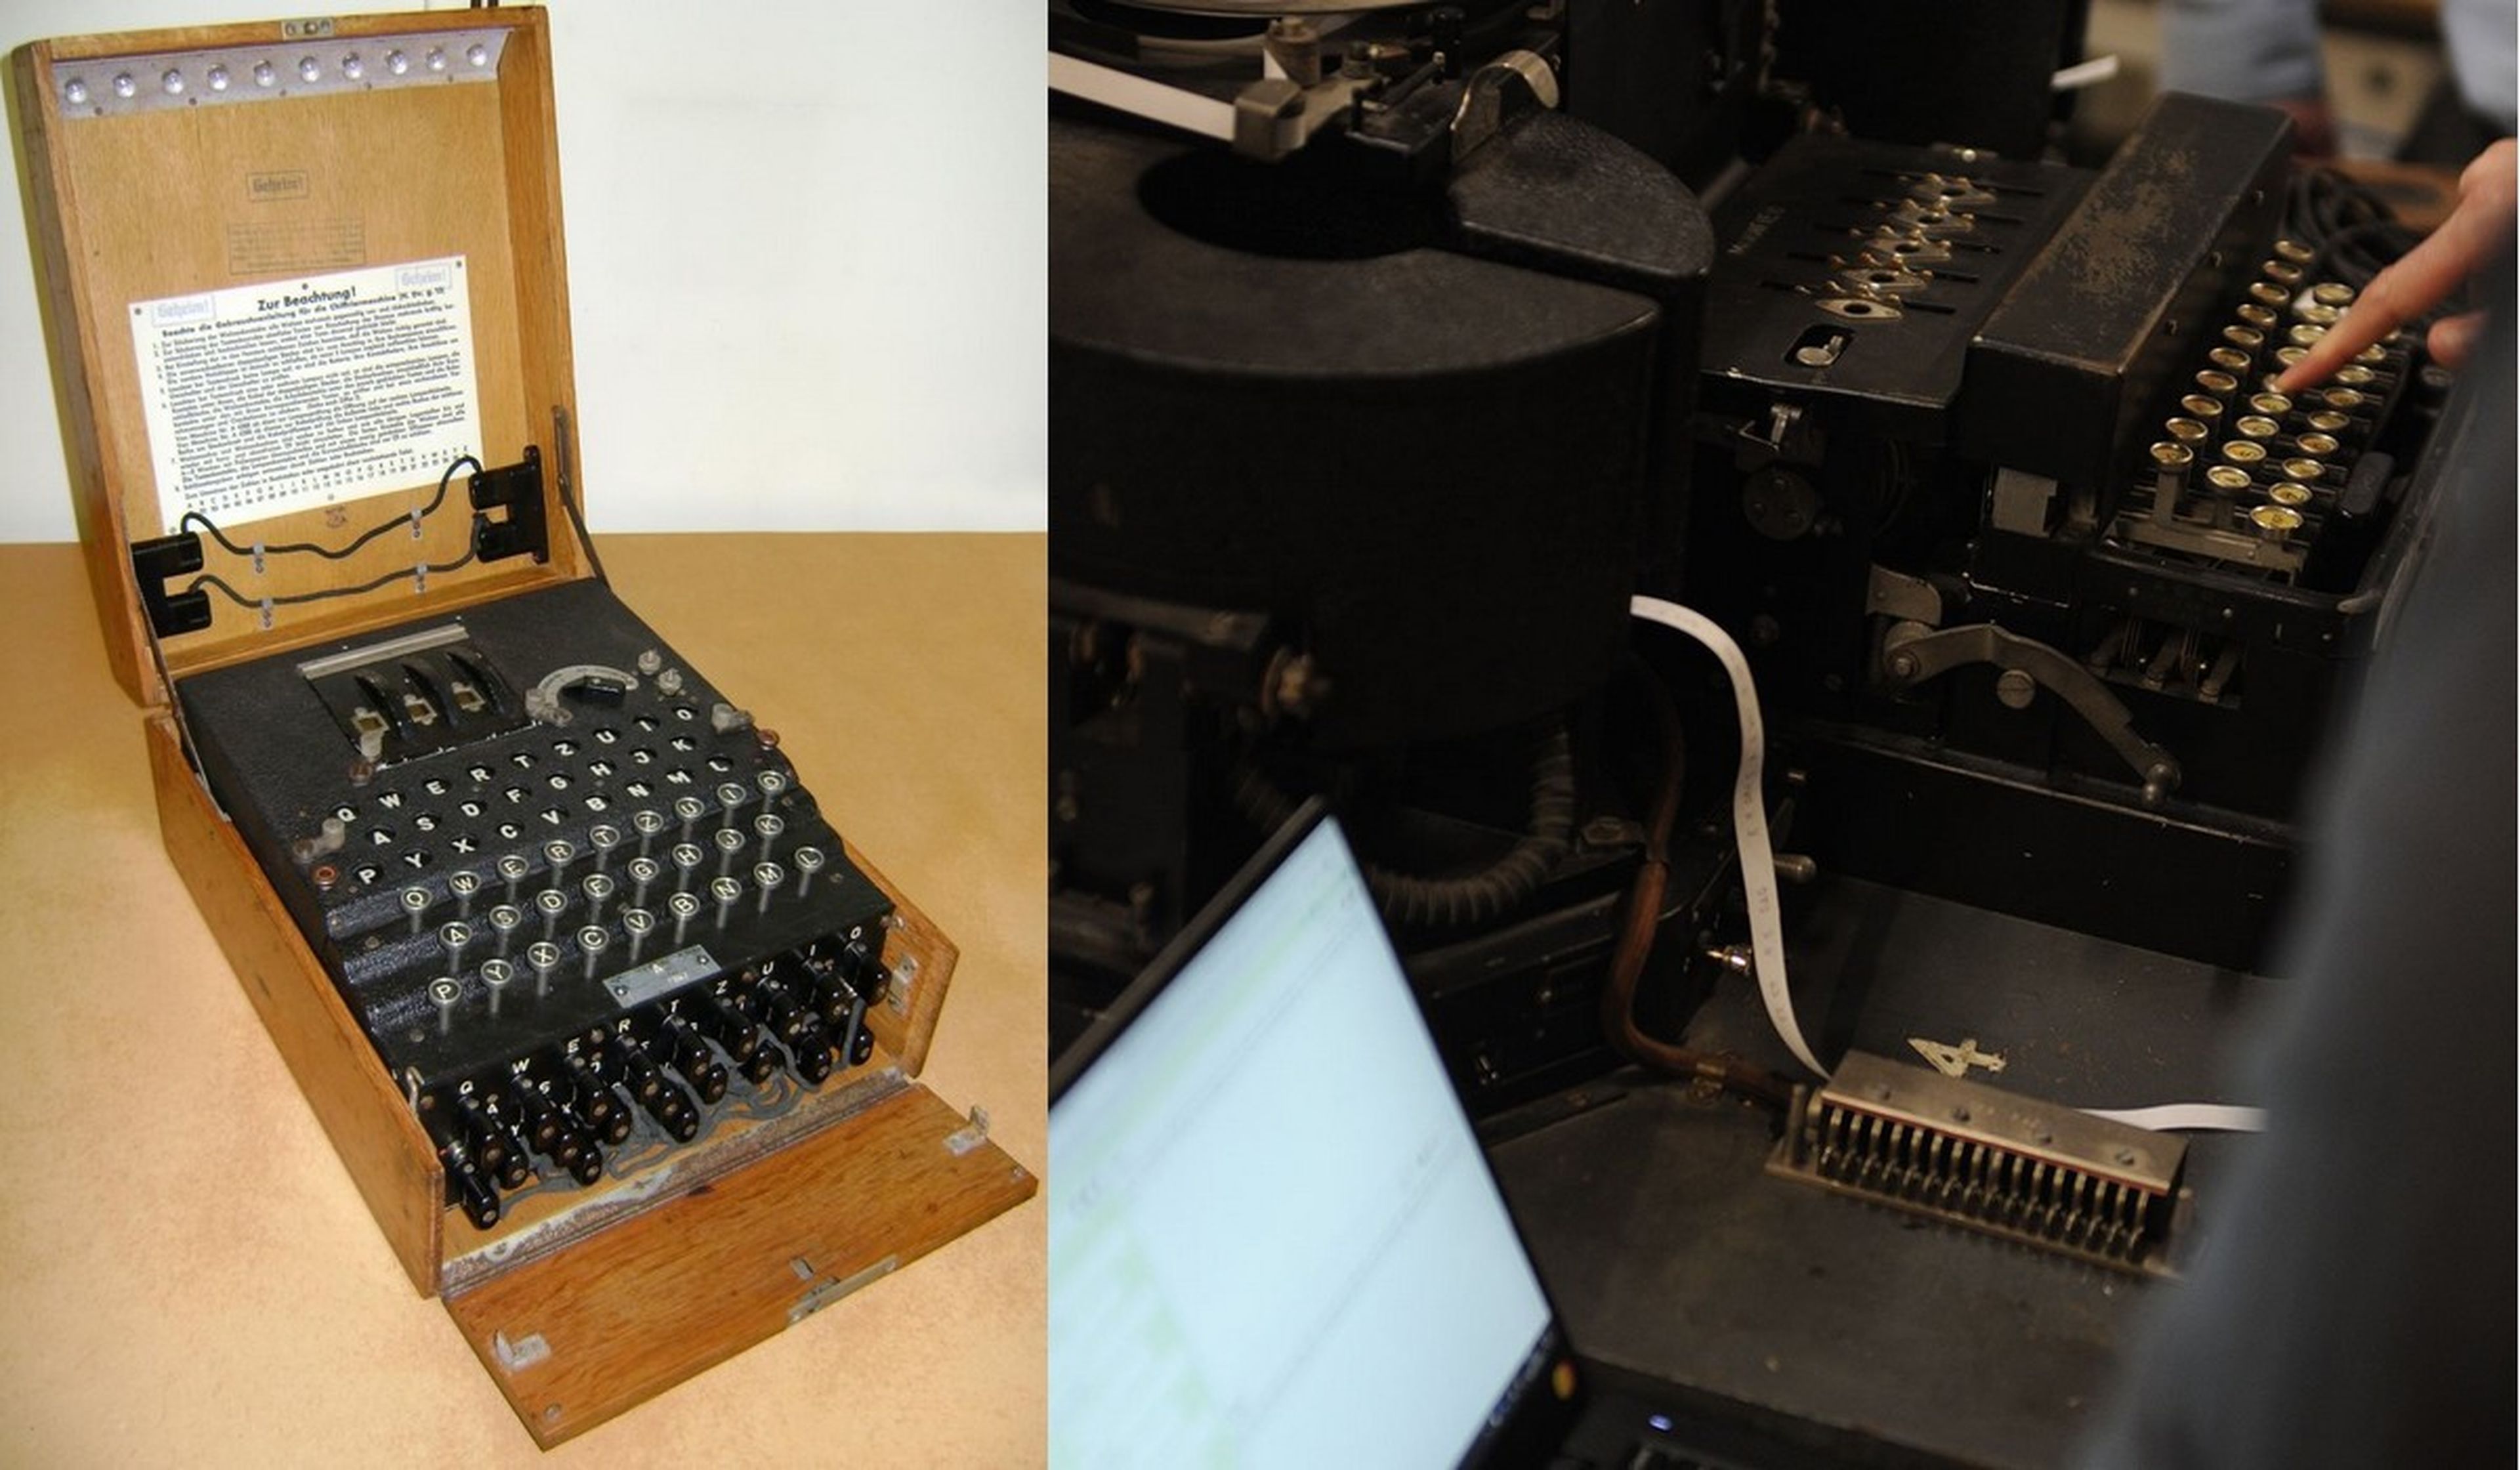 El servicio secreto británico lanza un emulador de Enigma, la máquina encriptadora nazi